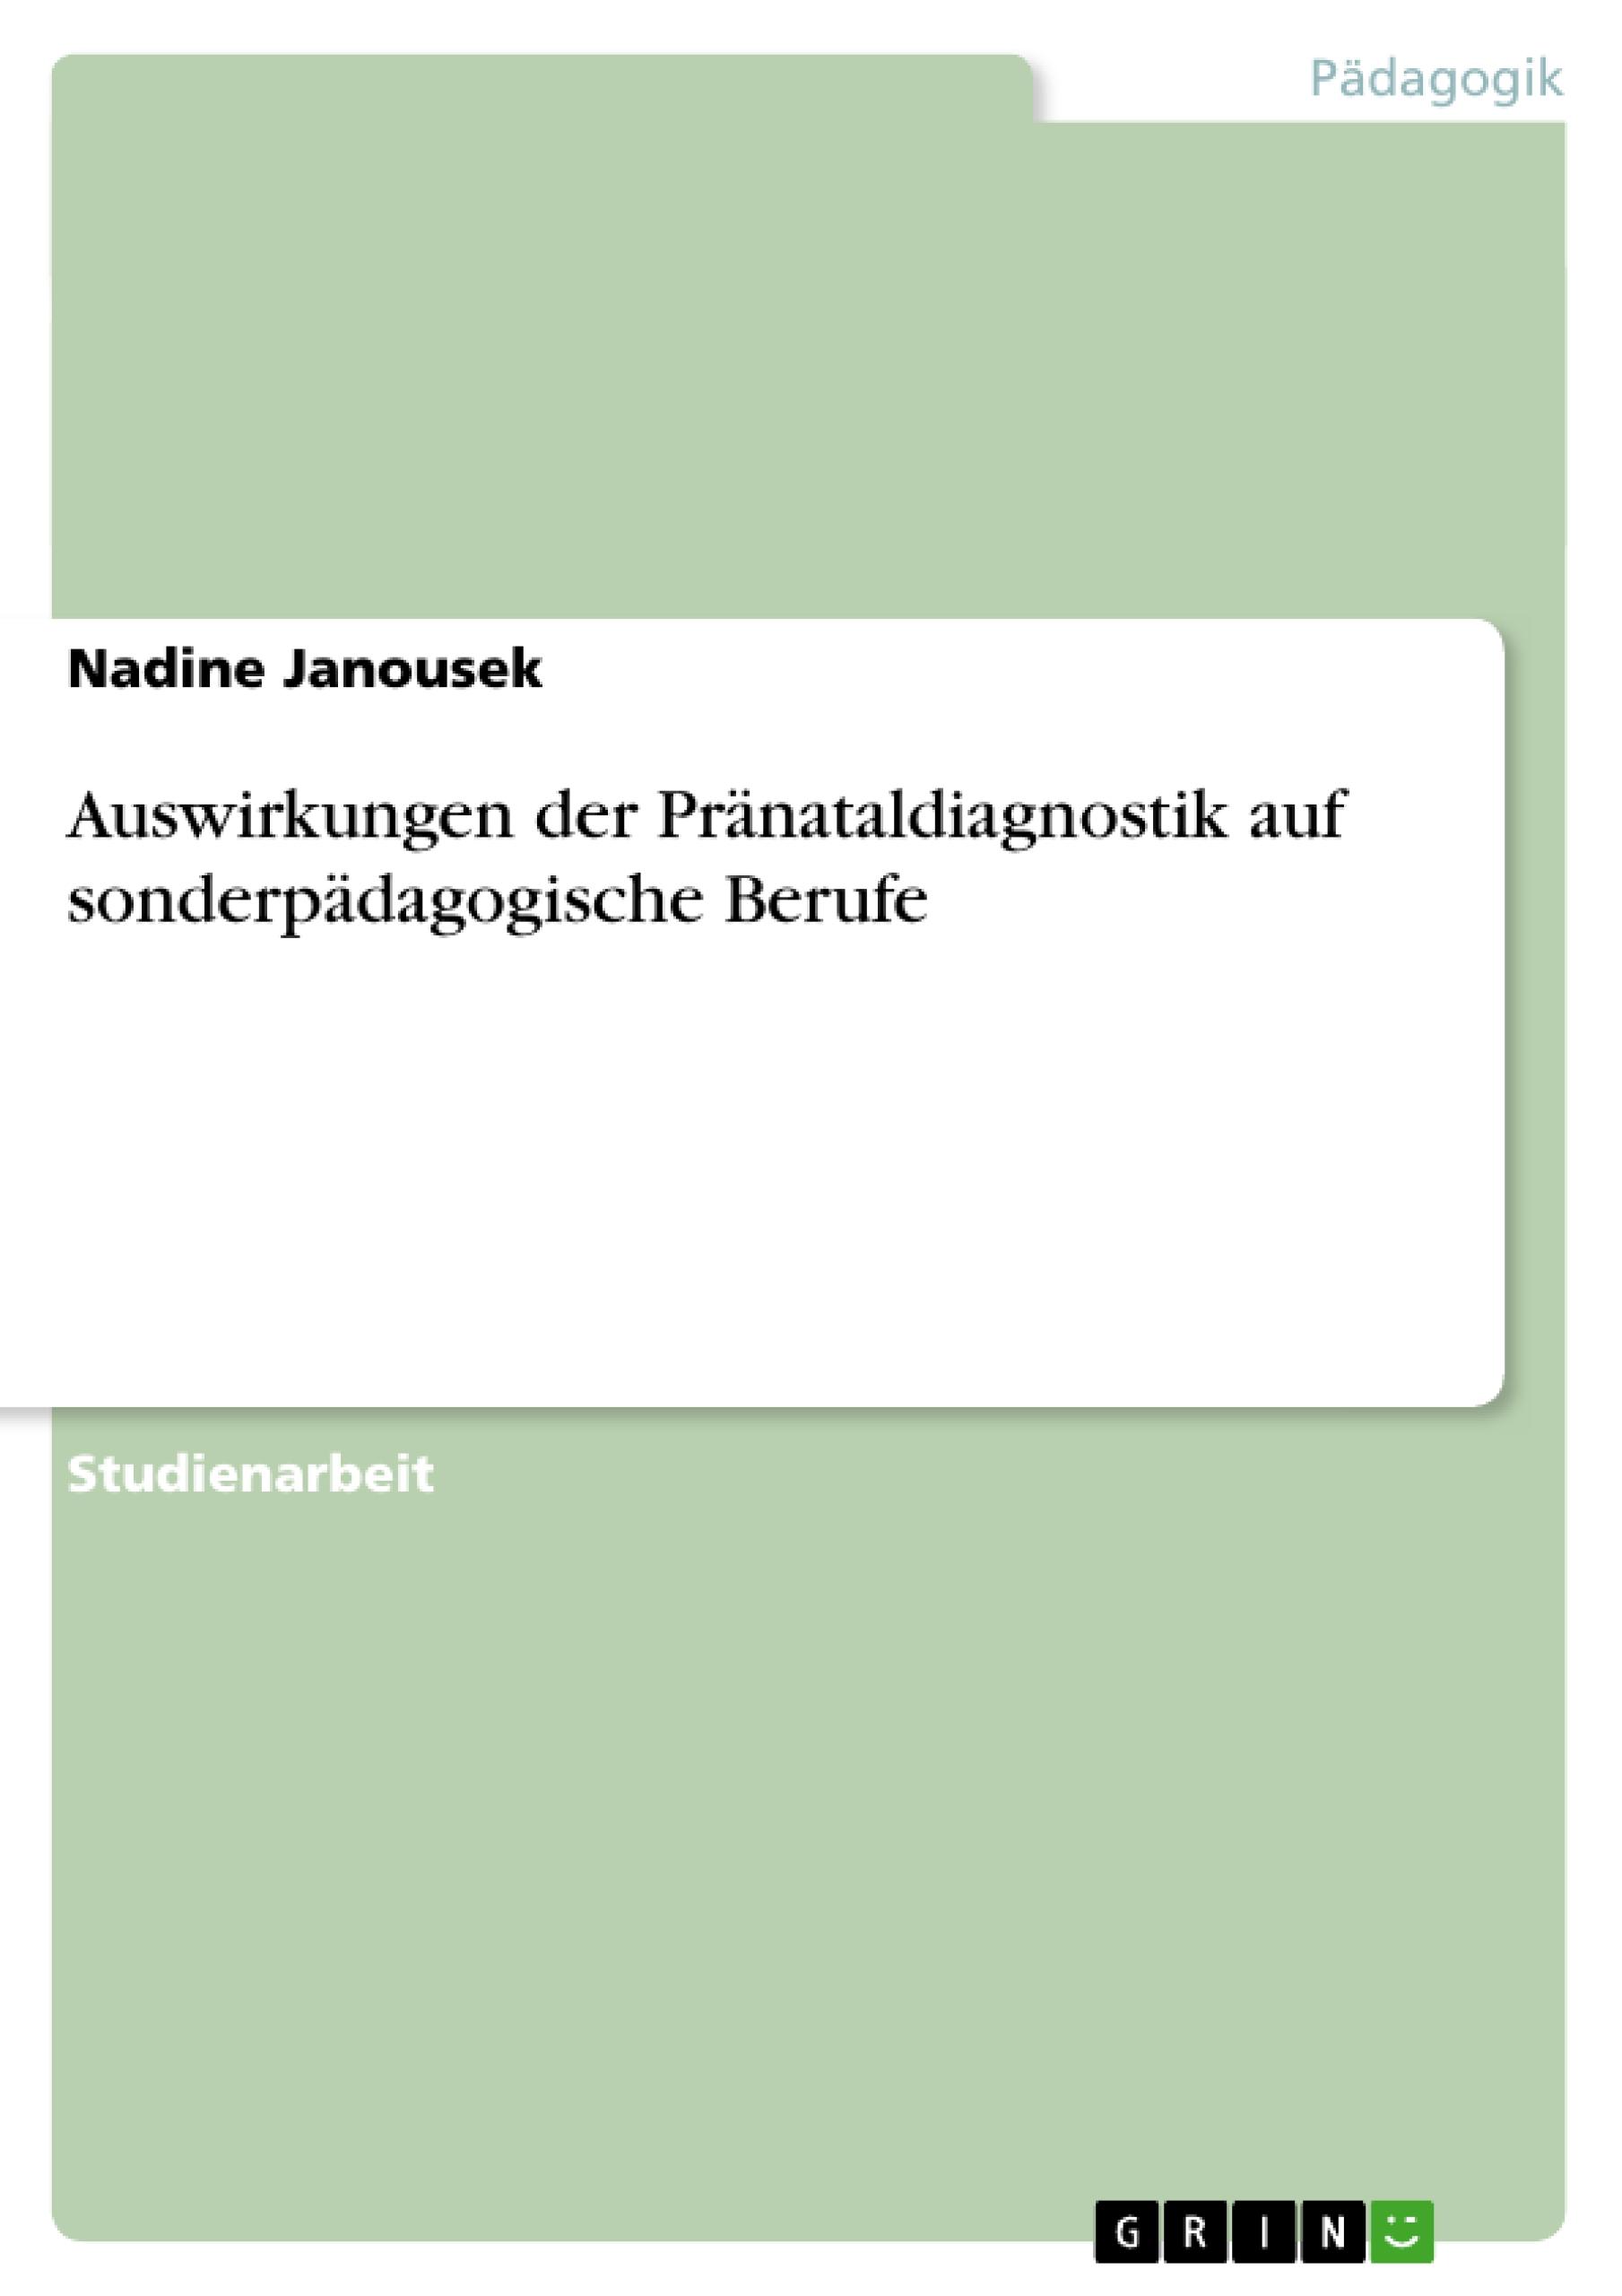 Auswirkungen der Praenataldiagnostik auf sonderpaedagogische Berufe - Janousek, Nadine